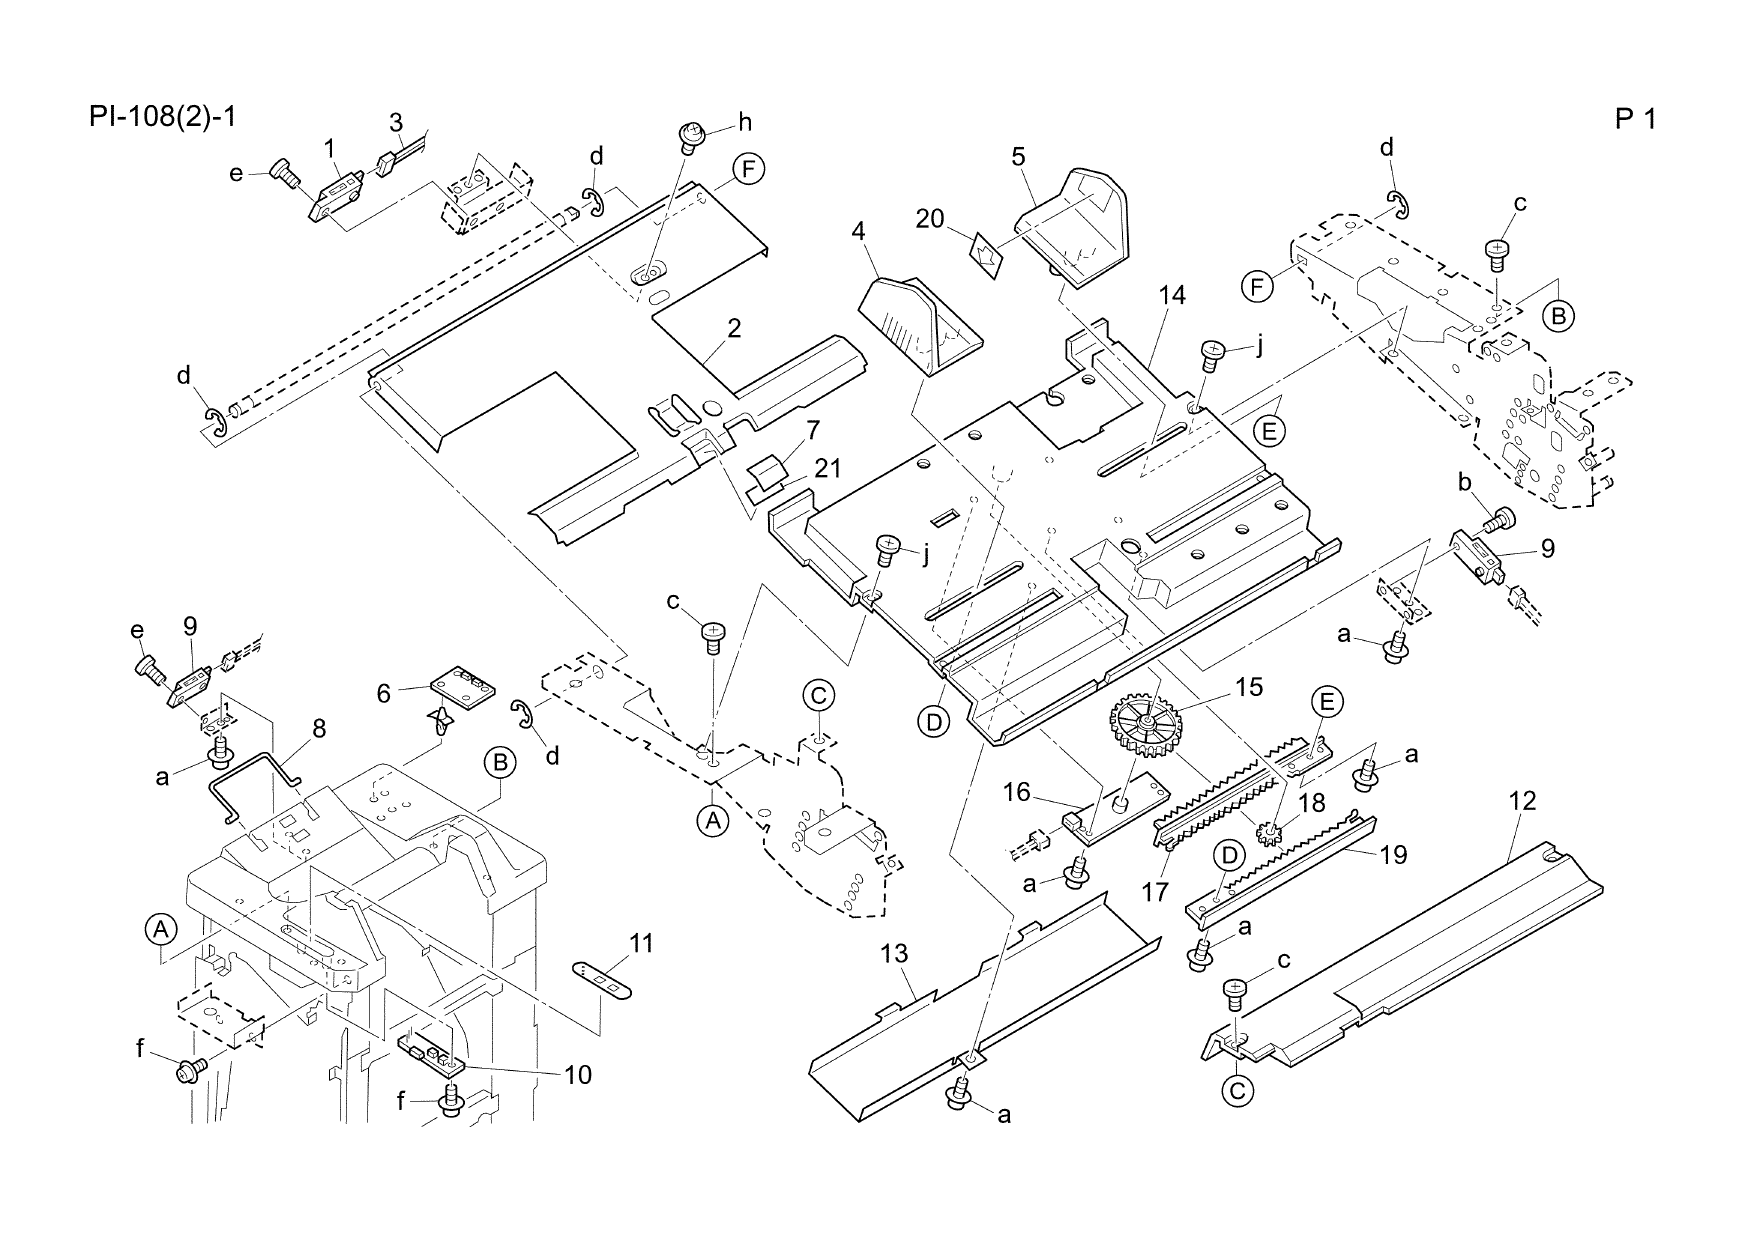 Konica-Minolta Options PI-108 Parts Manual-3